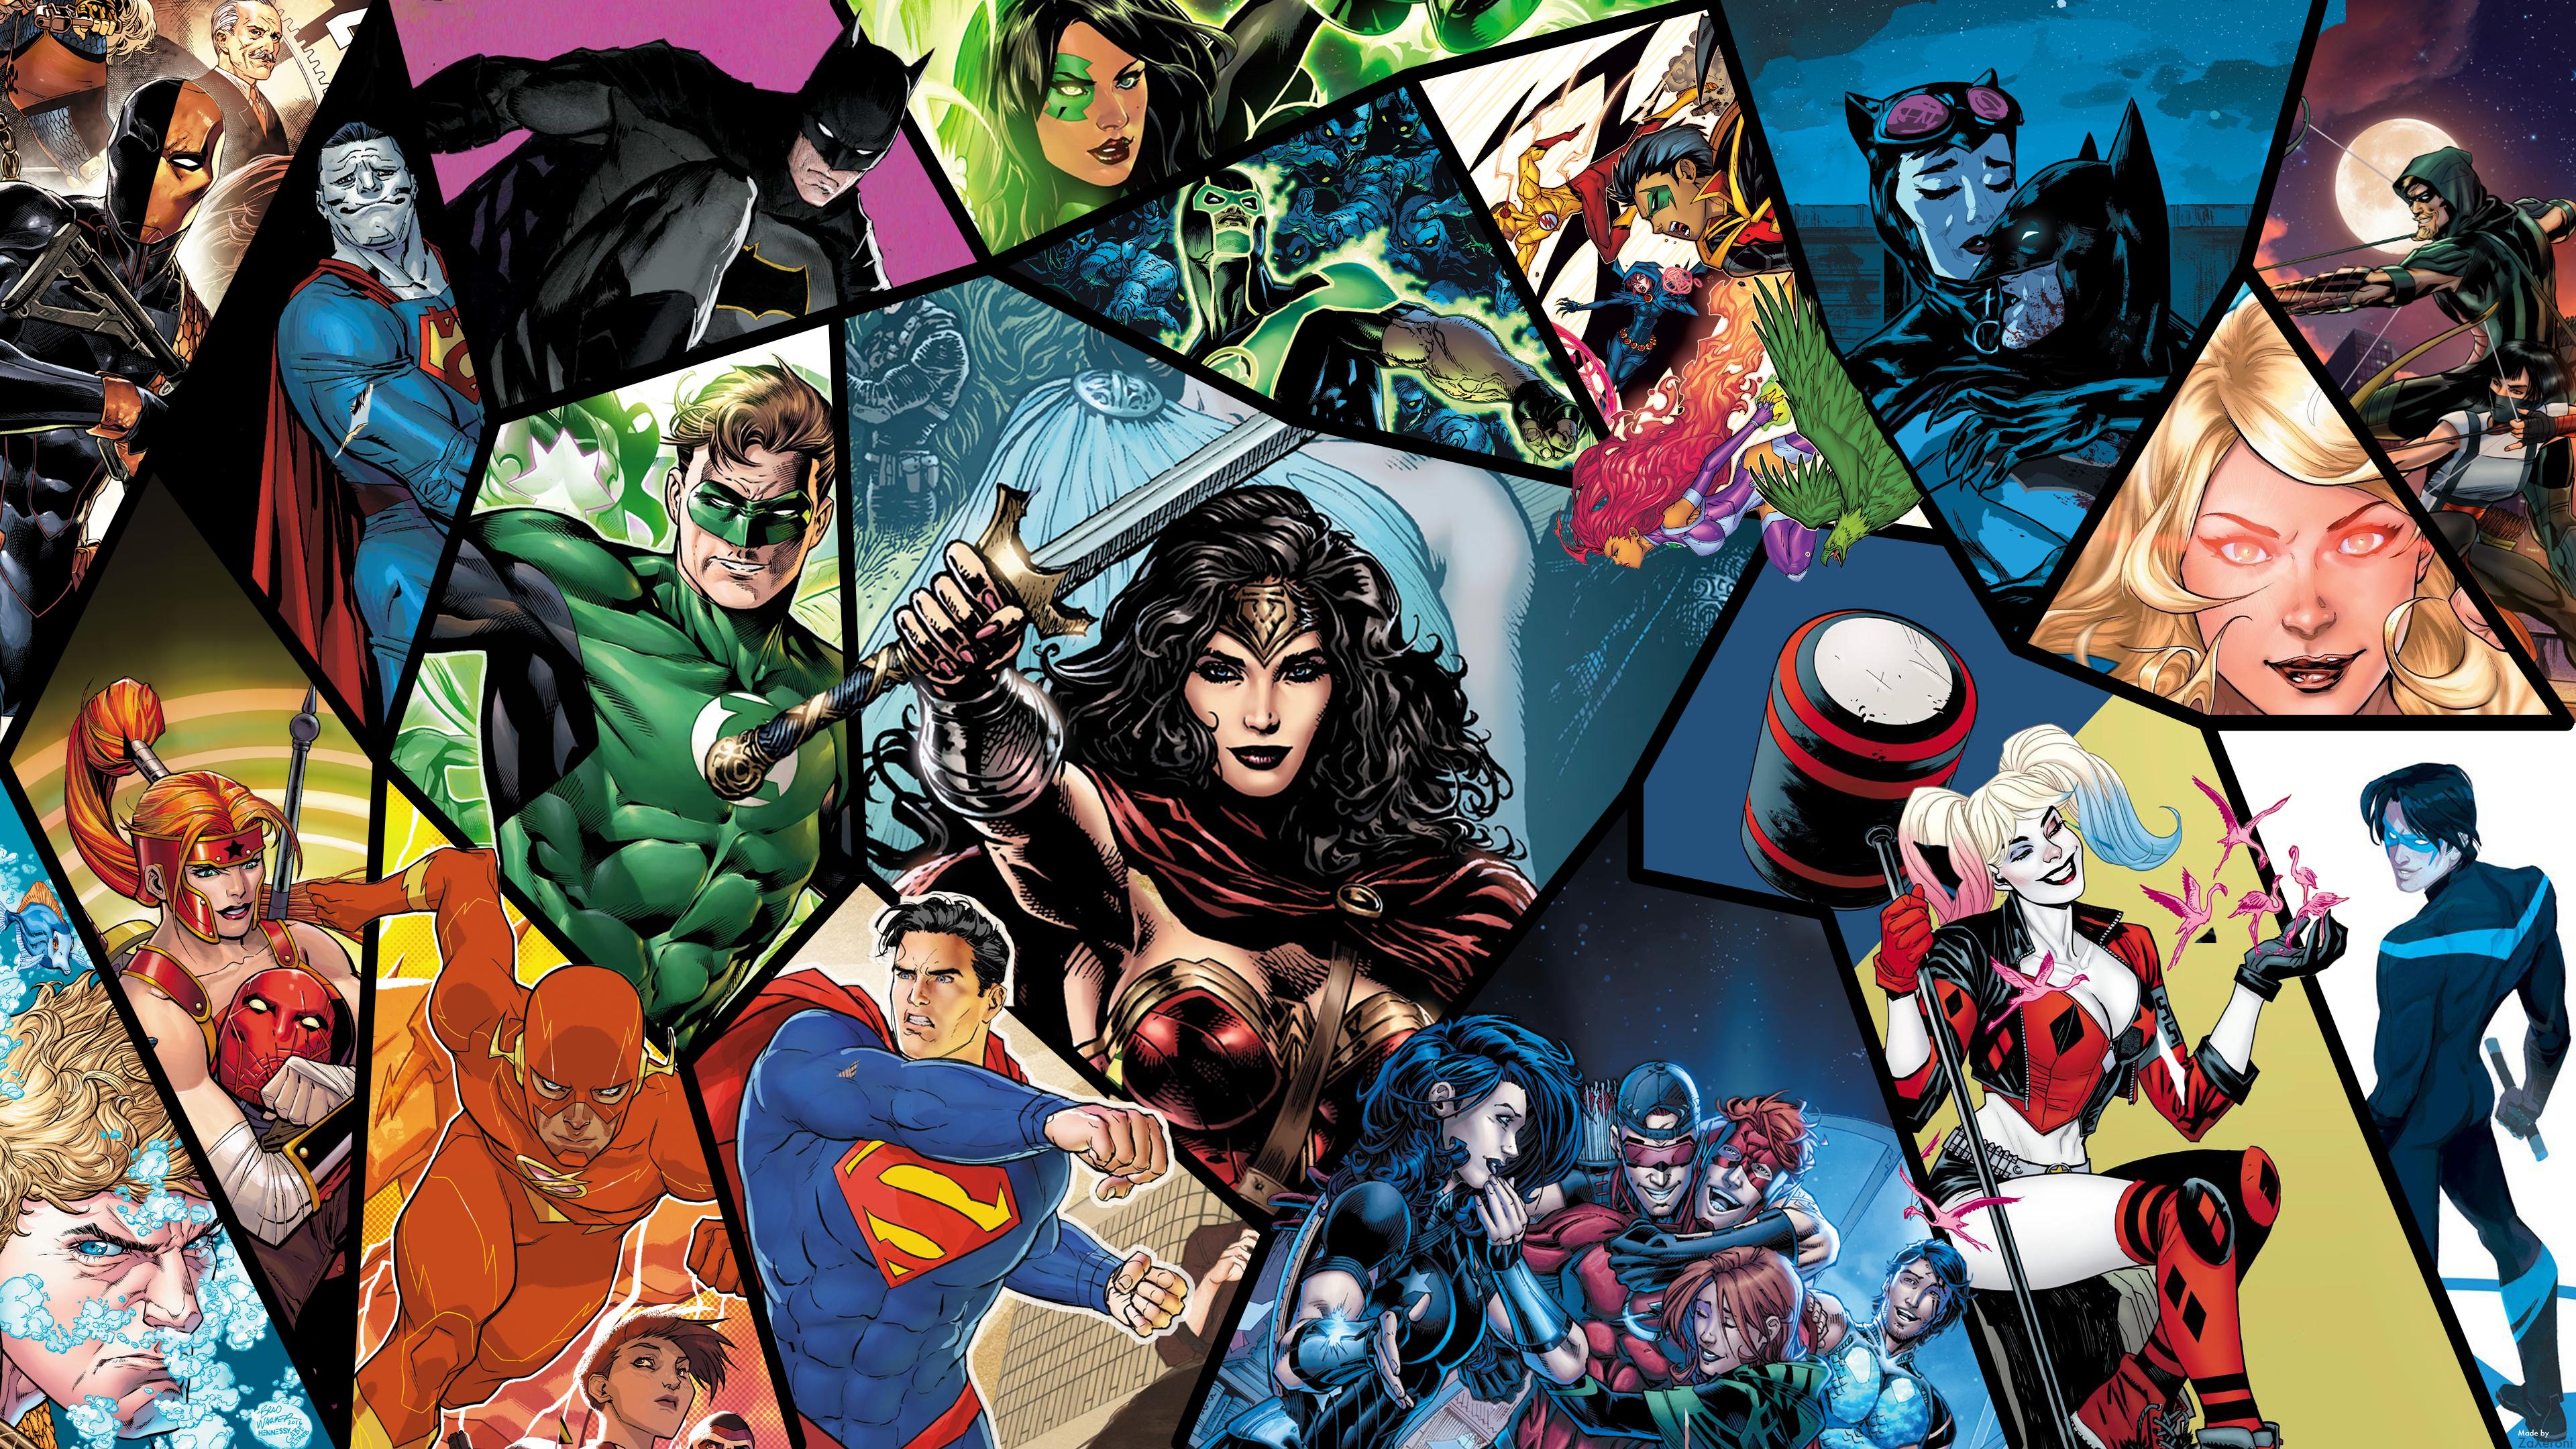 dc comics fond d'écran,des bandes dessinées,bande dessinée,collage,personnage fictif,super héros